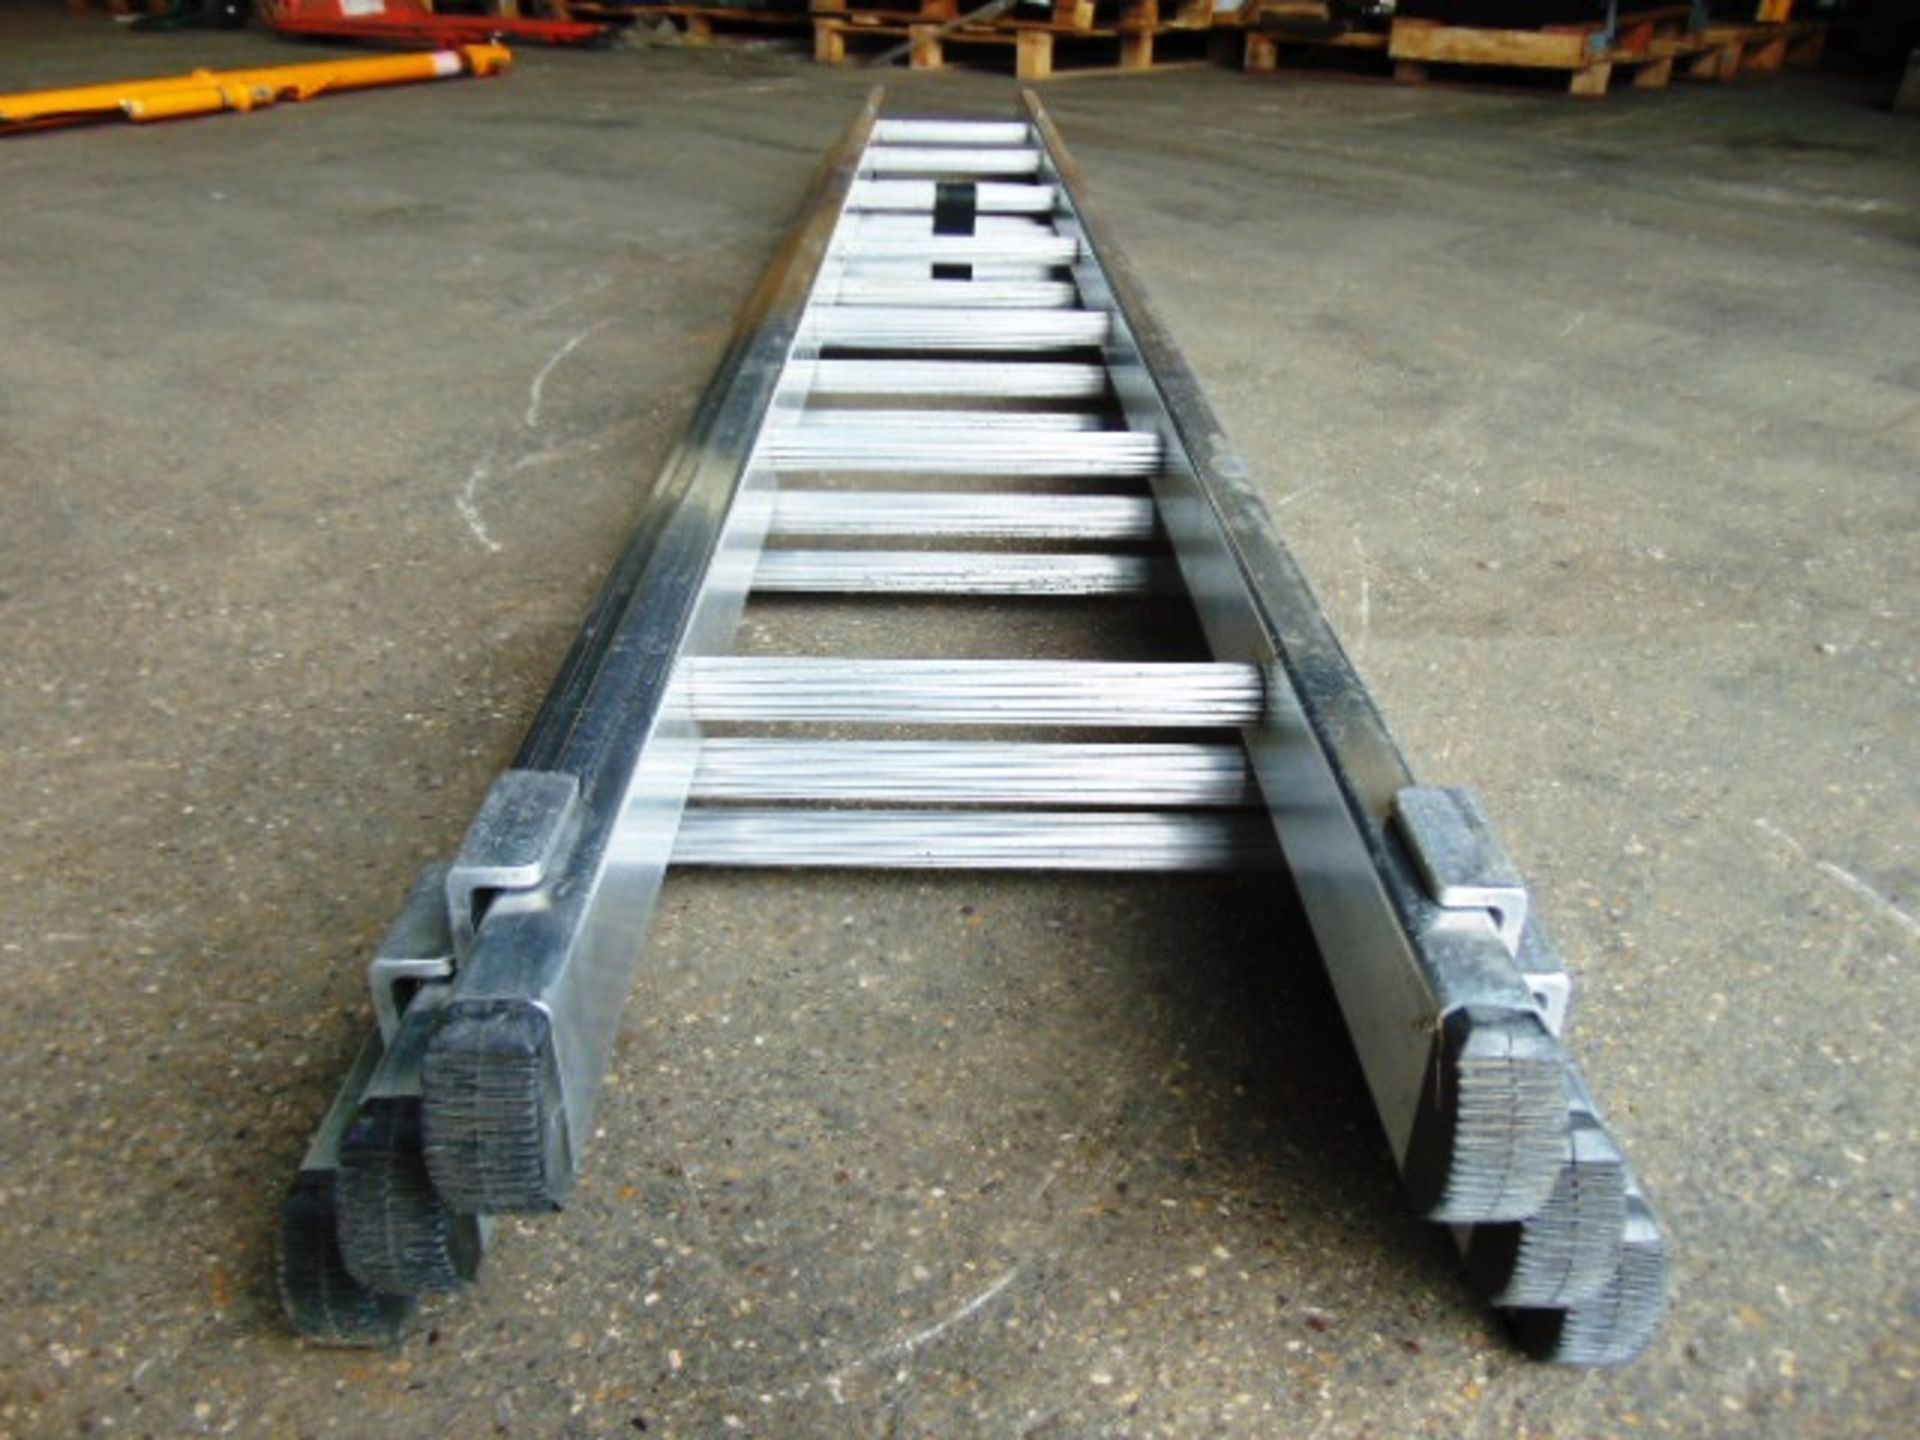 Bayley 3 Section Aluminium Ladder - Image 2 of 5